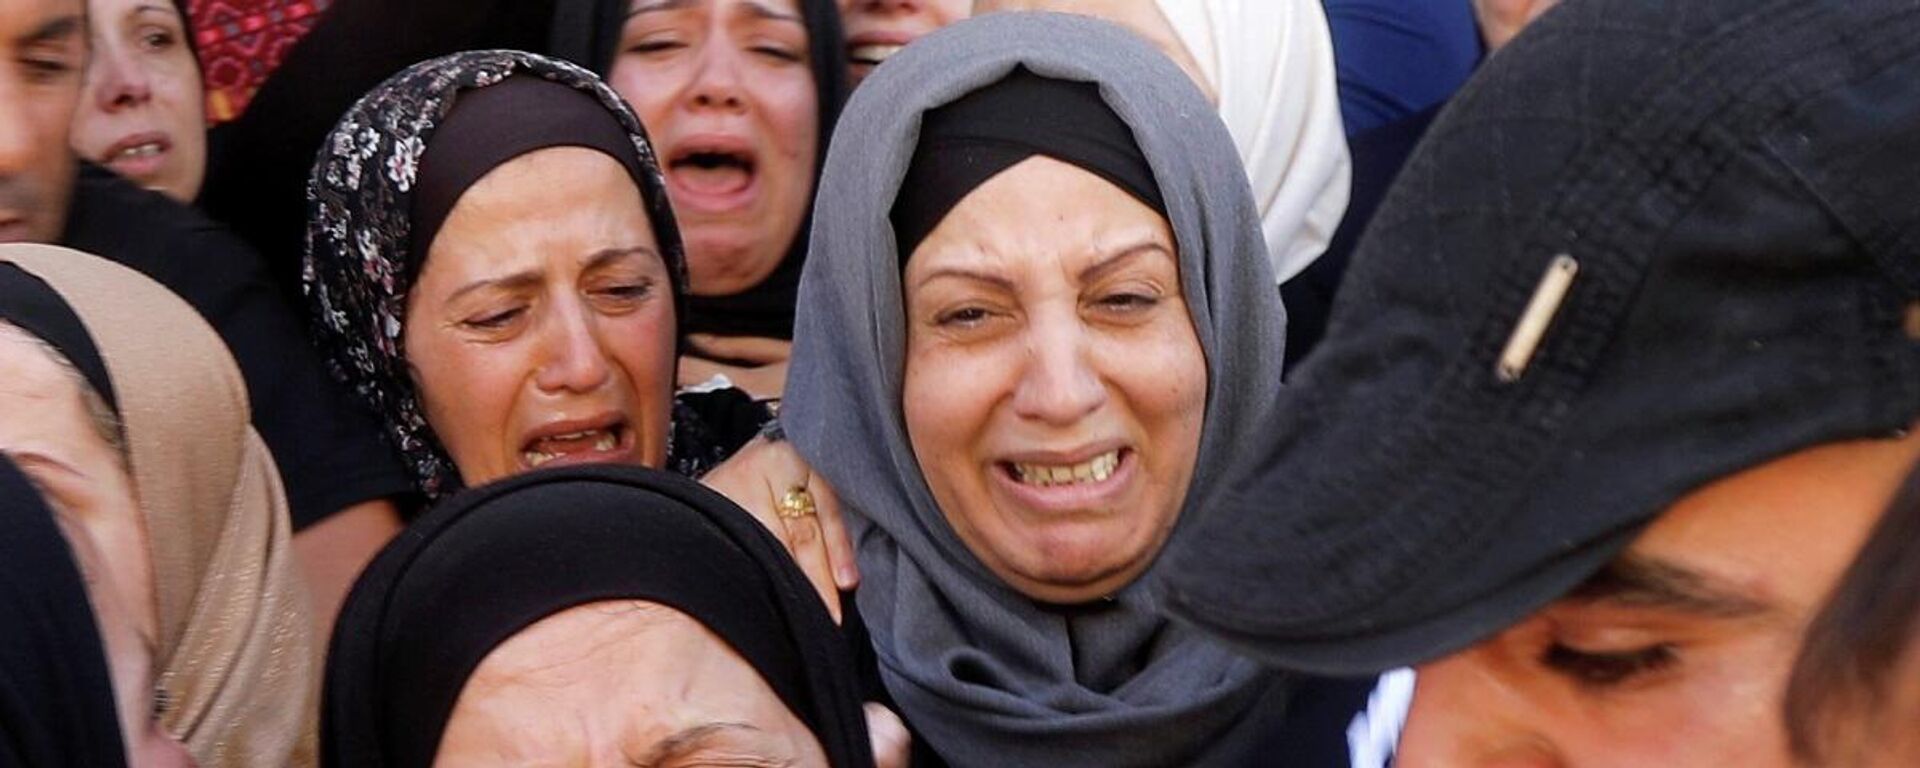 Mujeres palestinas lloran - Sputnik Mundo, 1920, 16.05.2021